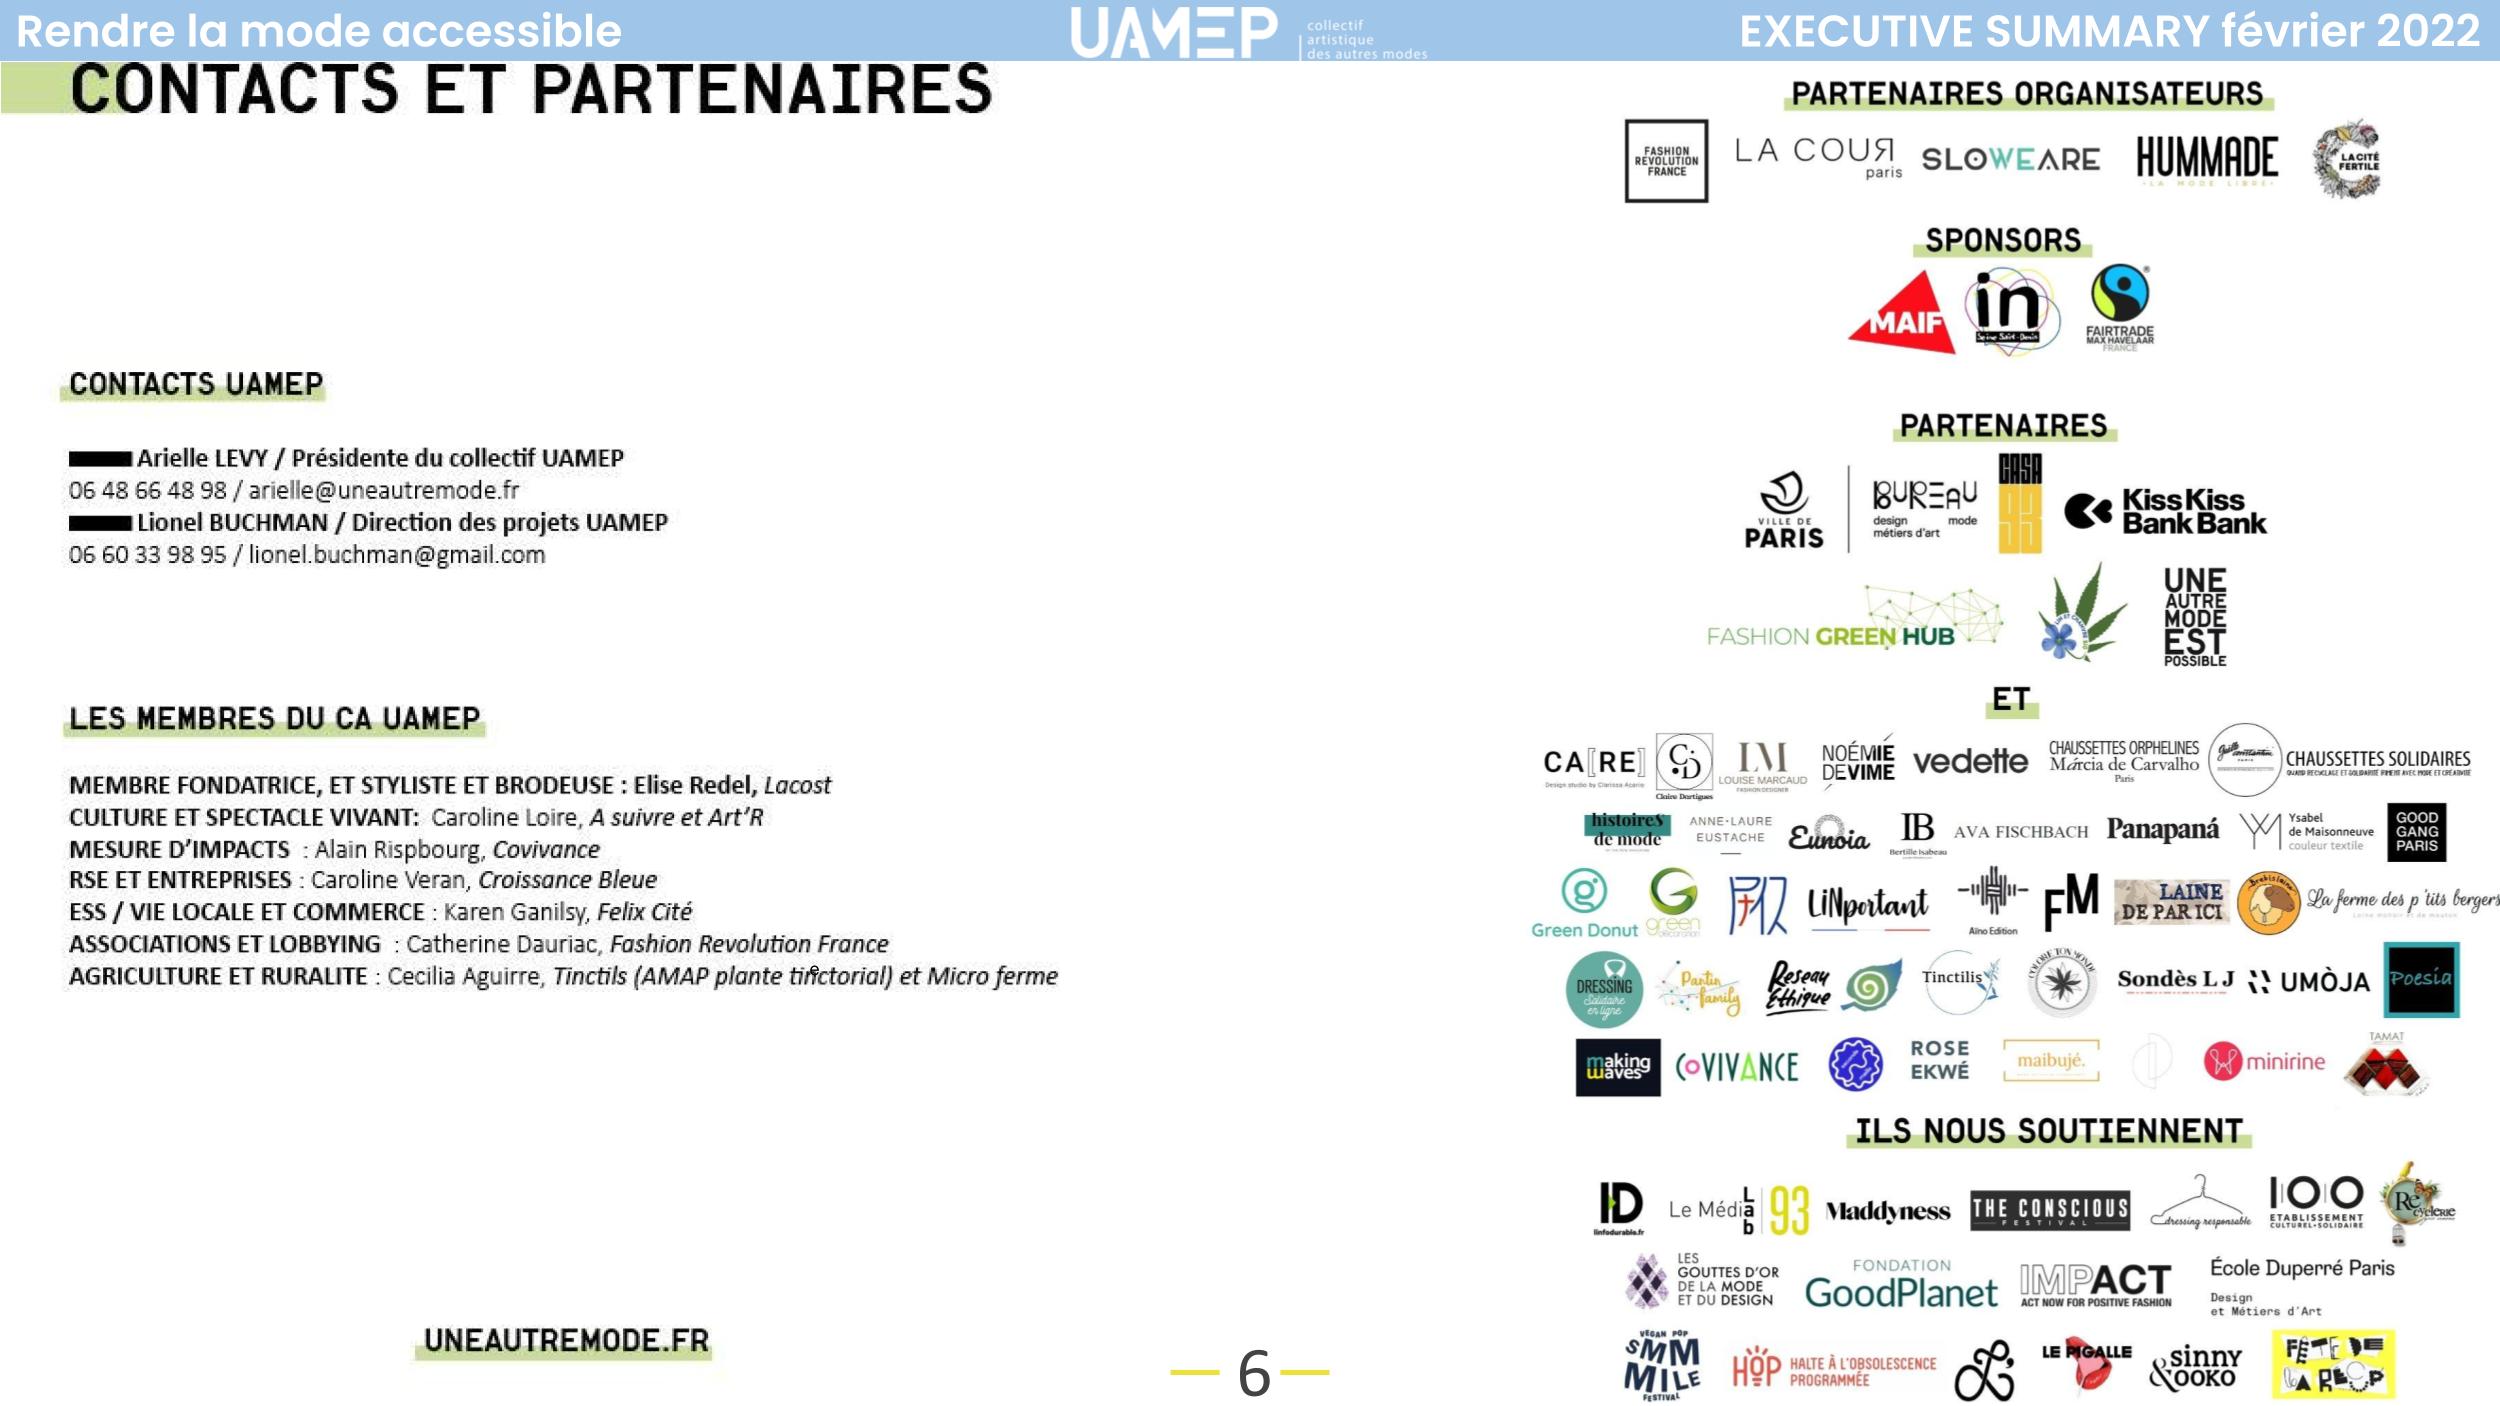 Présentation UAMEP mars 2022_Contact & Partenaires